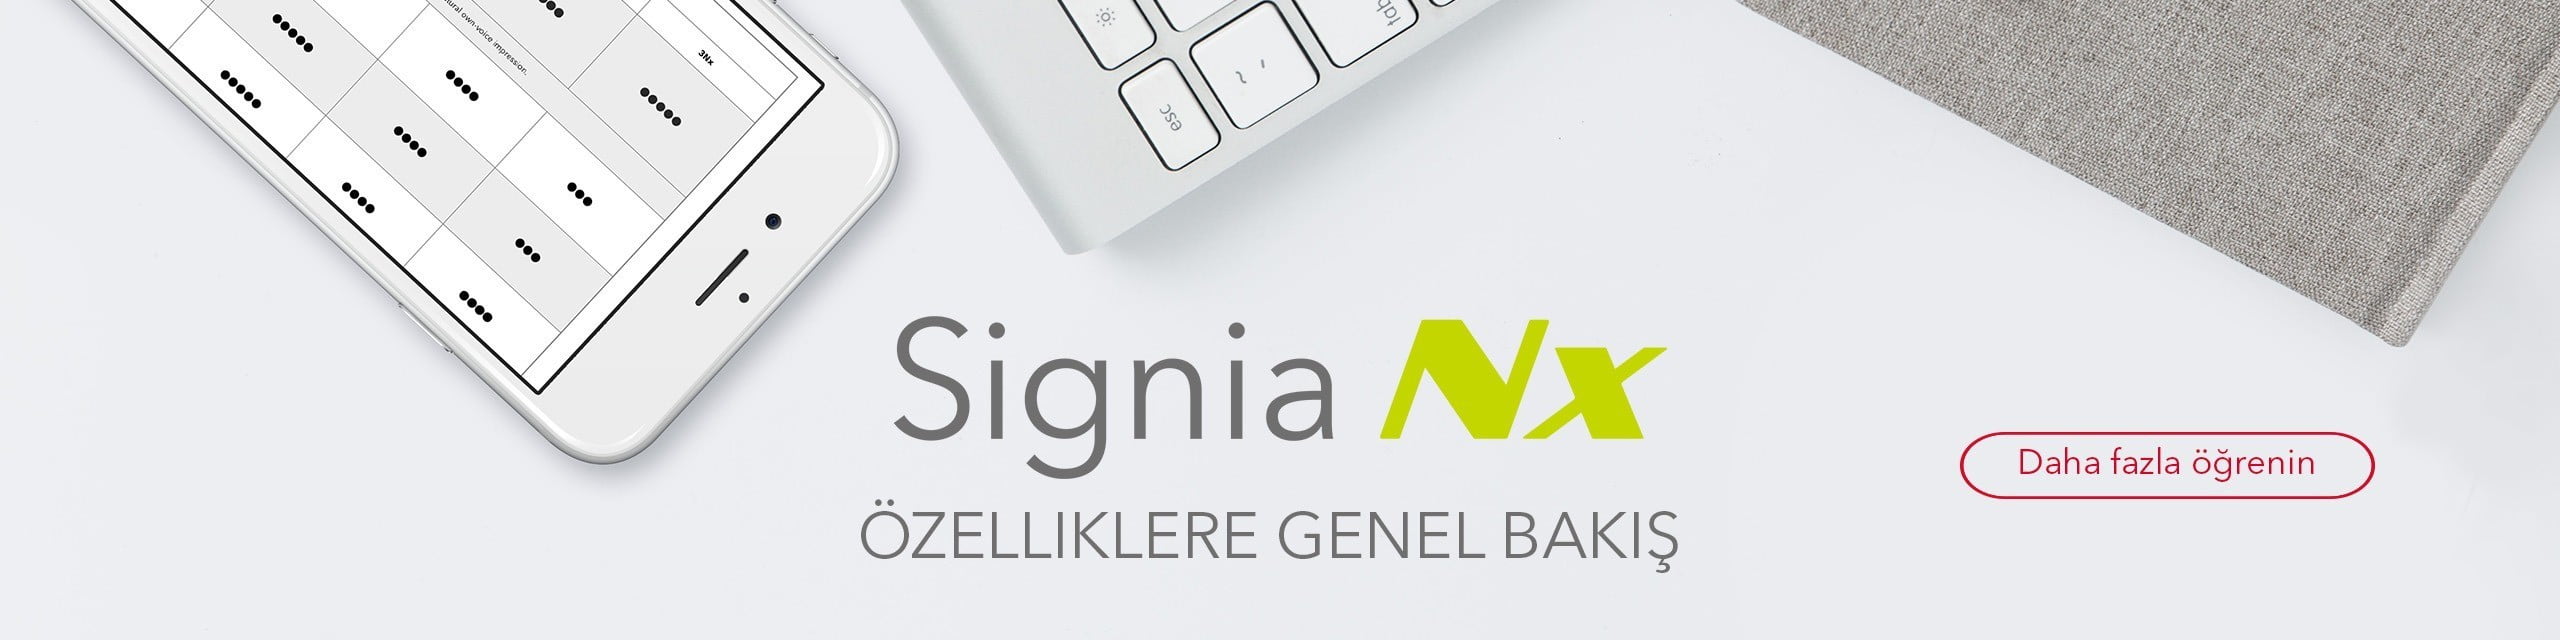 Signia NX TR ozellikler - Pure 13 Nx